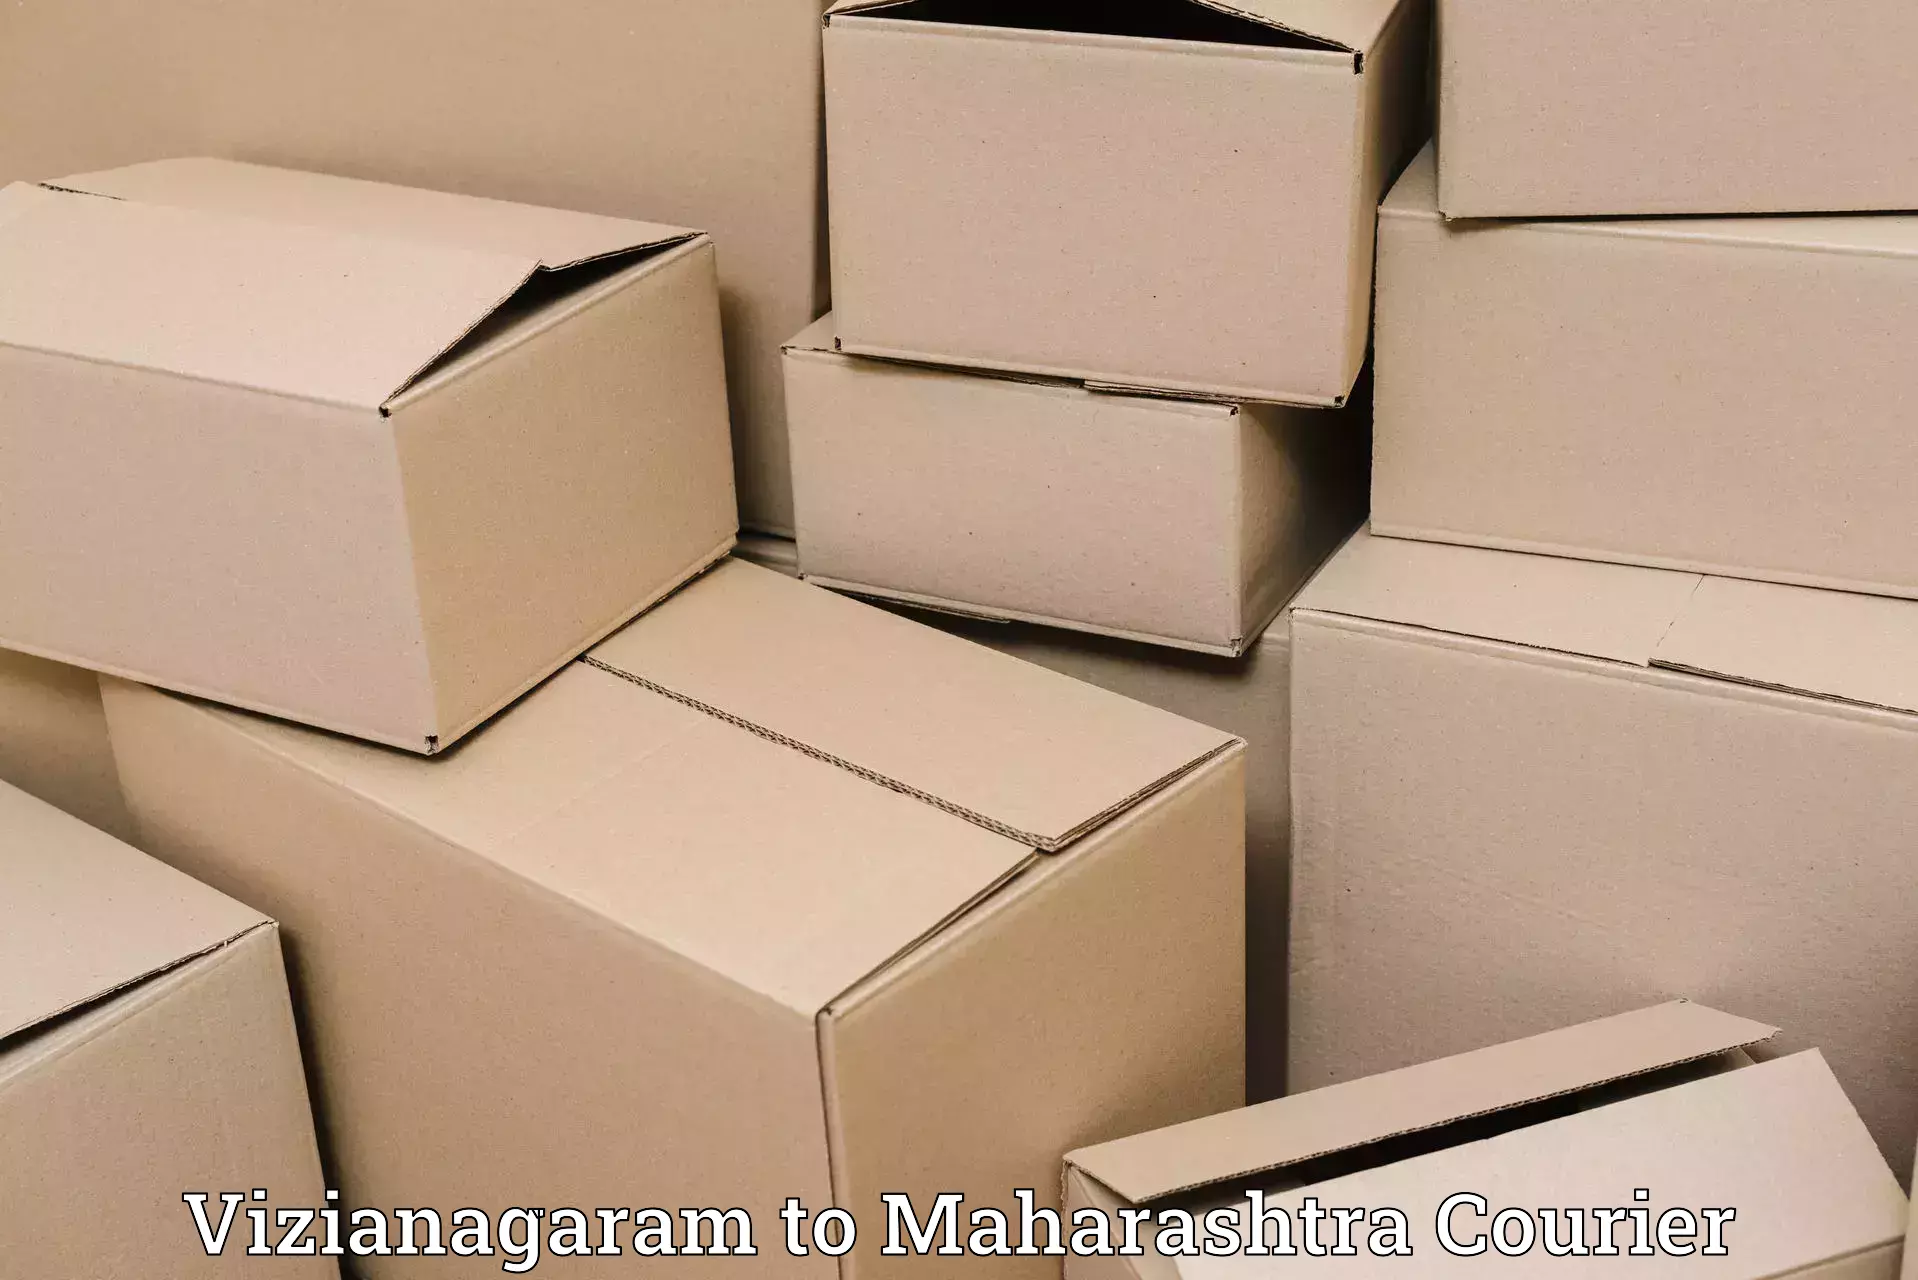 Urgent luggage shipment Vizianagaram to Maharashtra